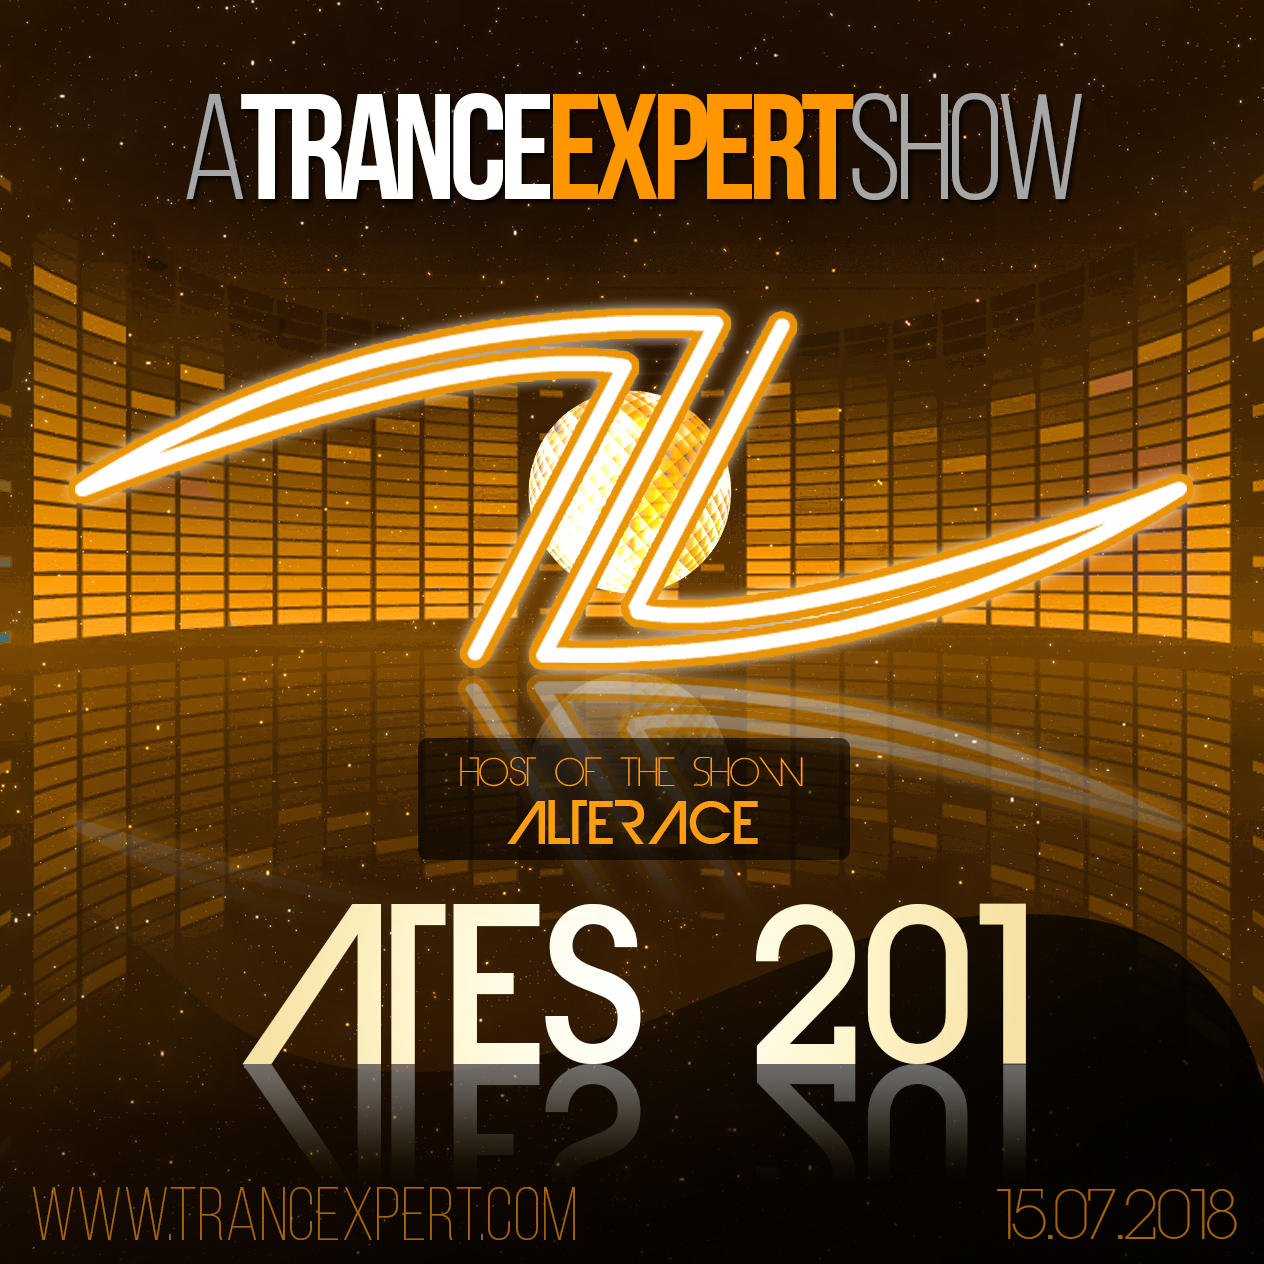 A Trance Expert Show #201